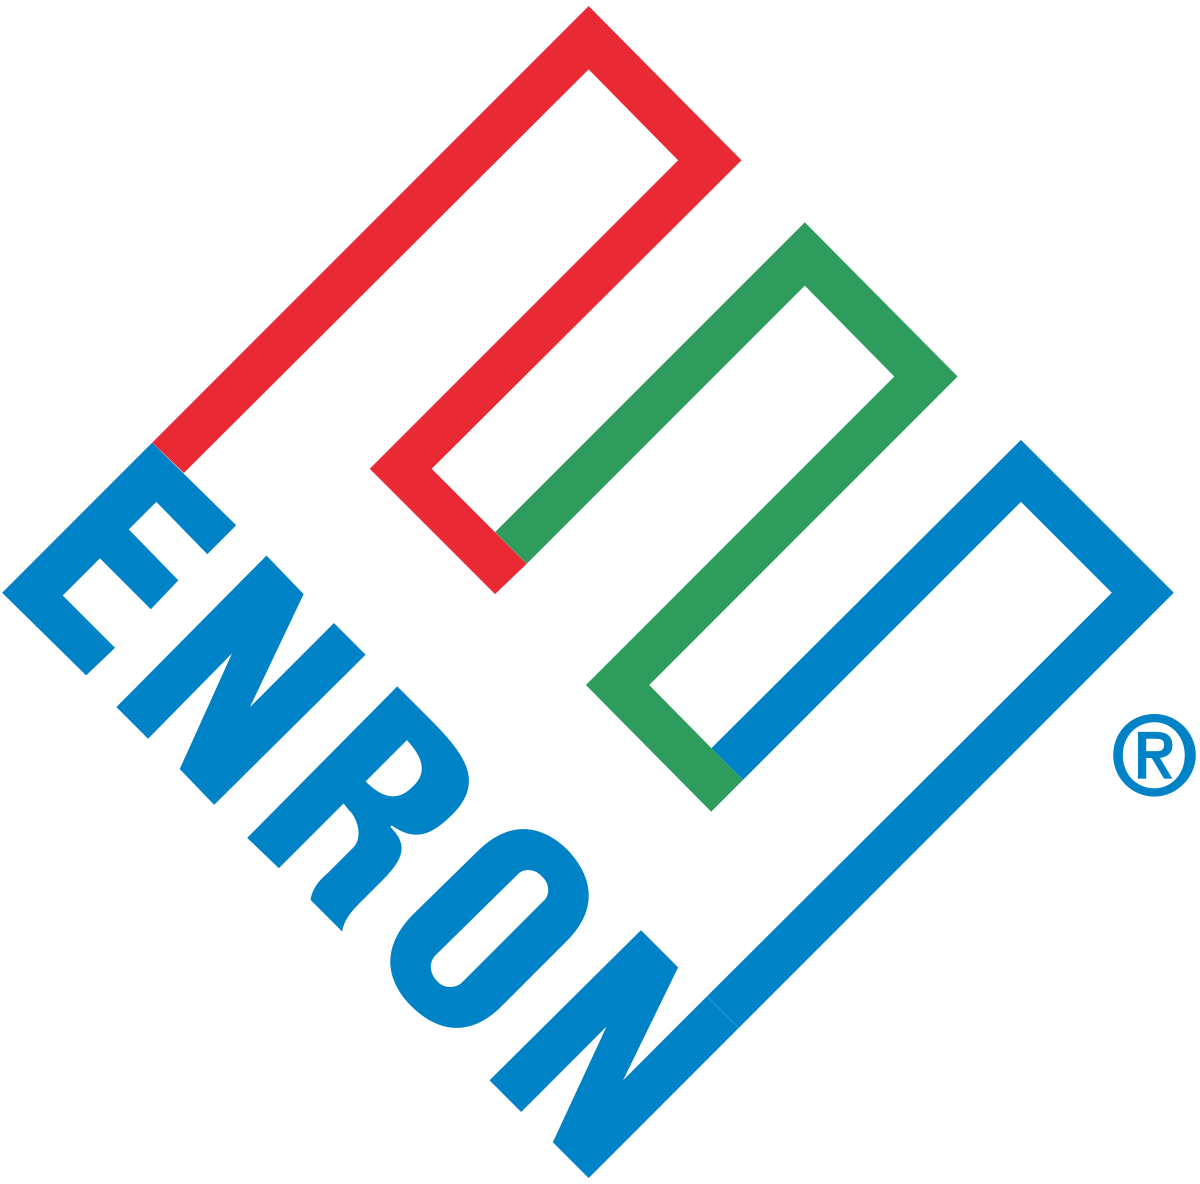 Enron - Wikipedia